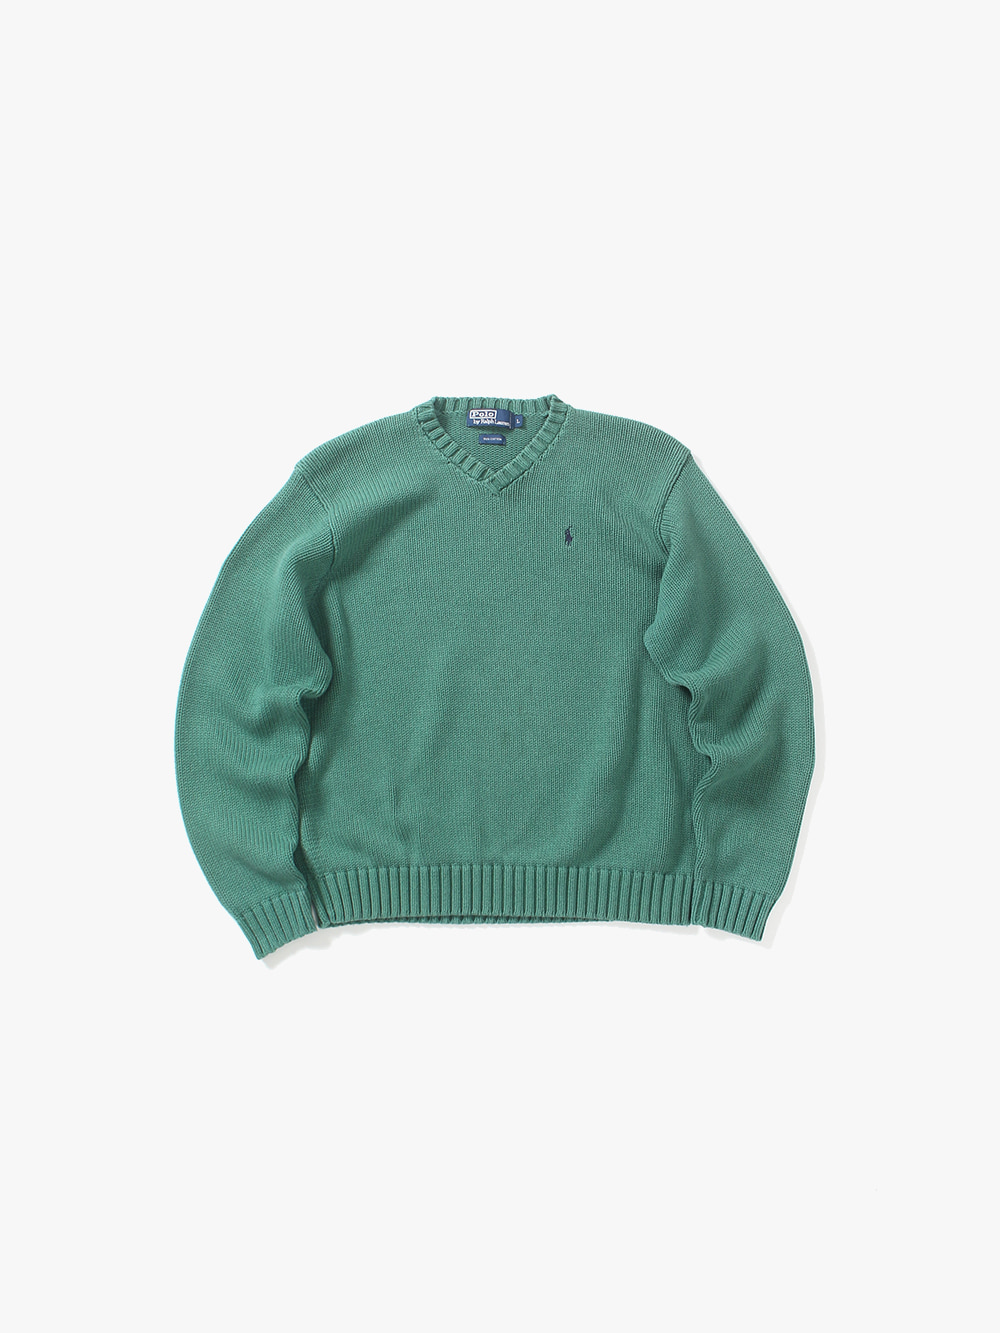 [ L ] Polo Ralph Lauren Sweater (6262)